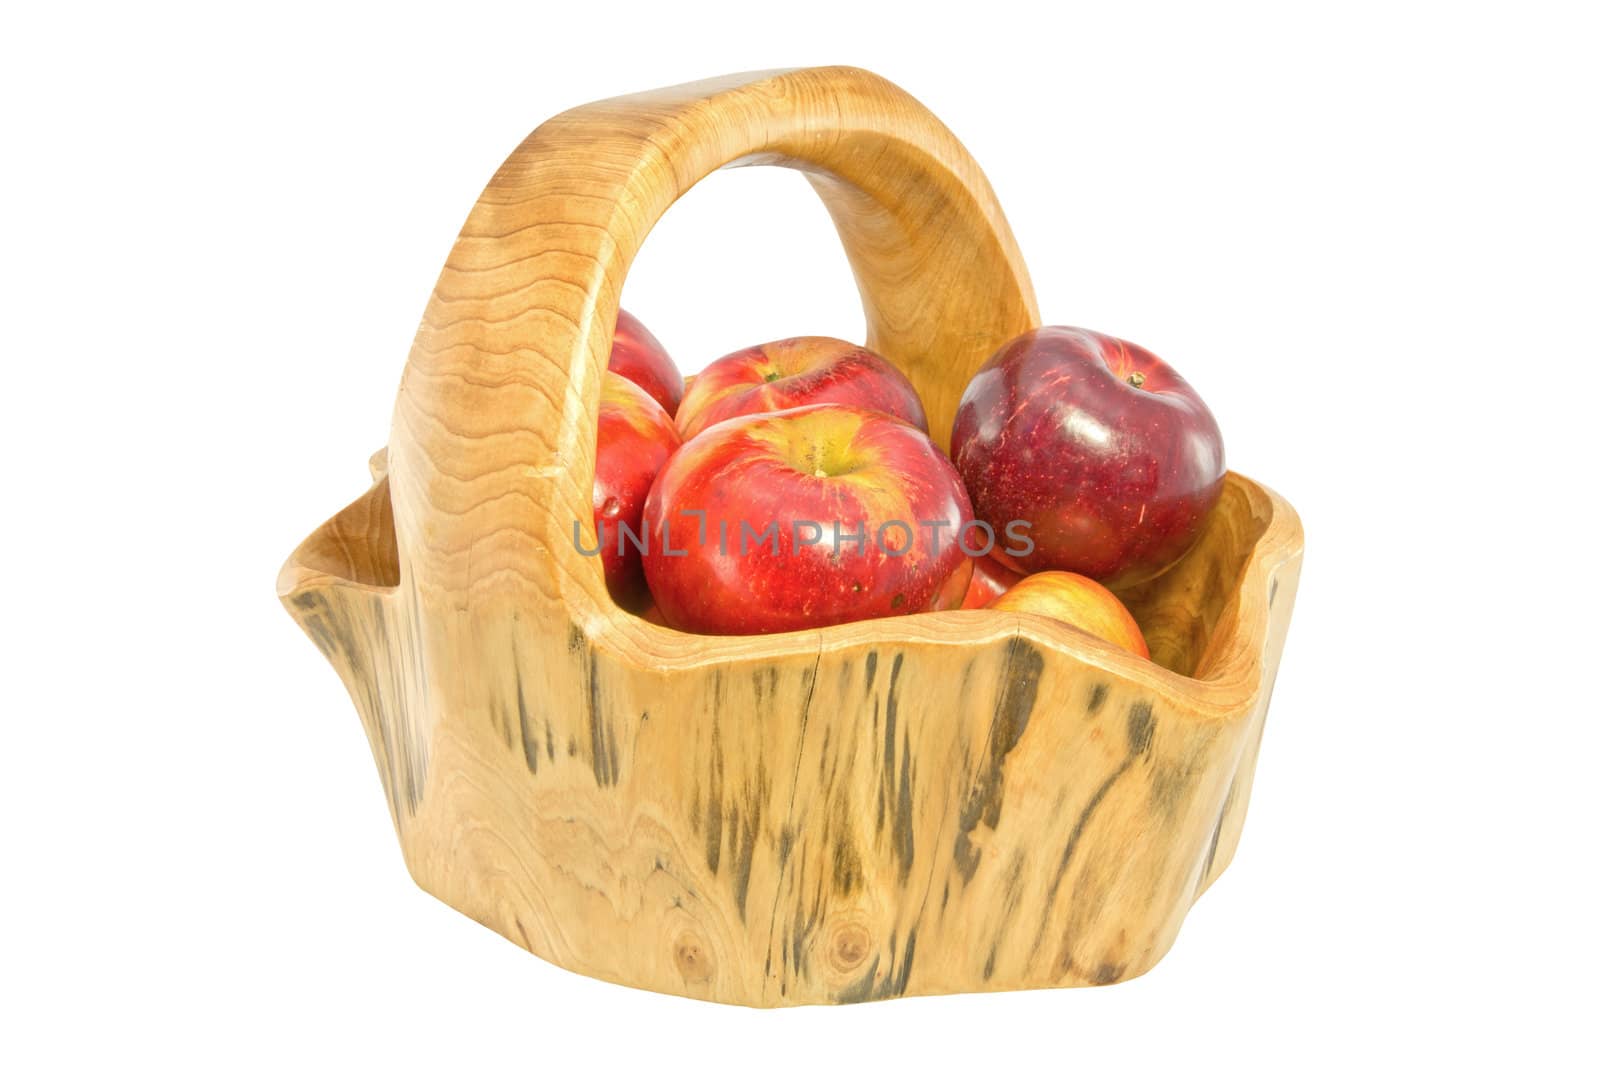 A basket of apples by renegadewanderer